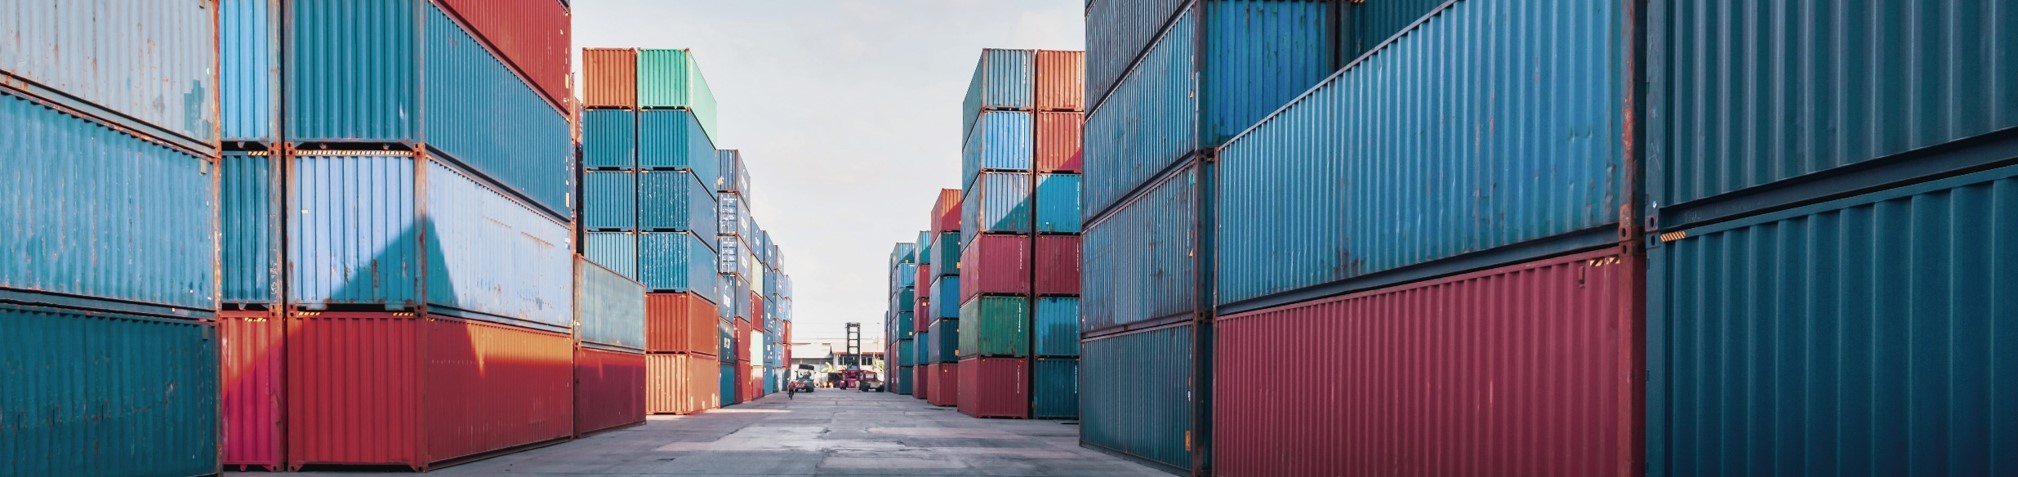 Crédito Privado: containeres em área portuária